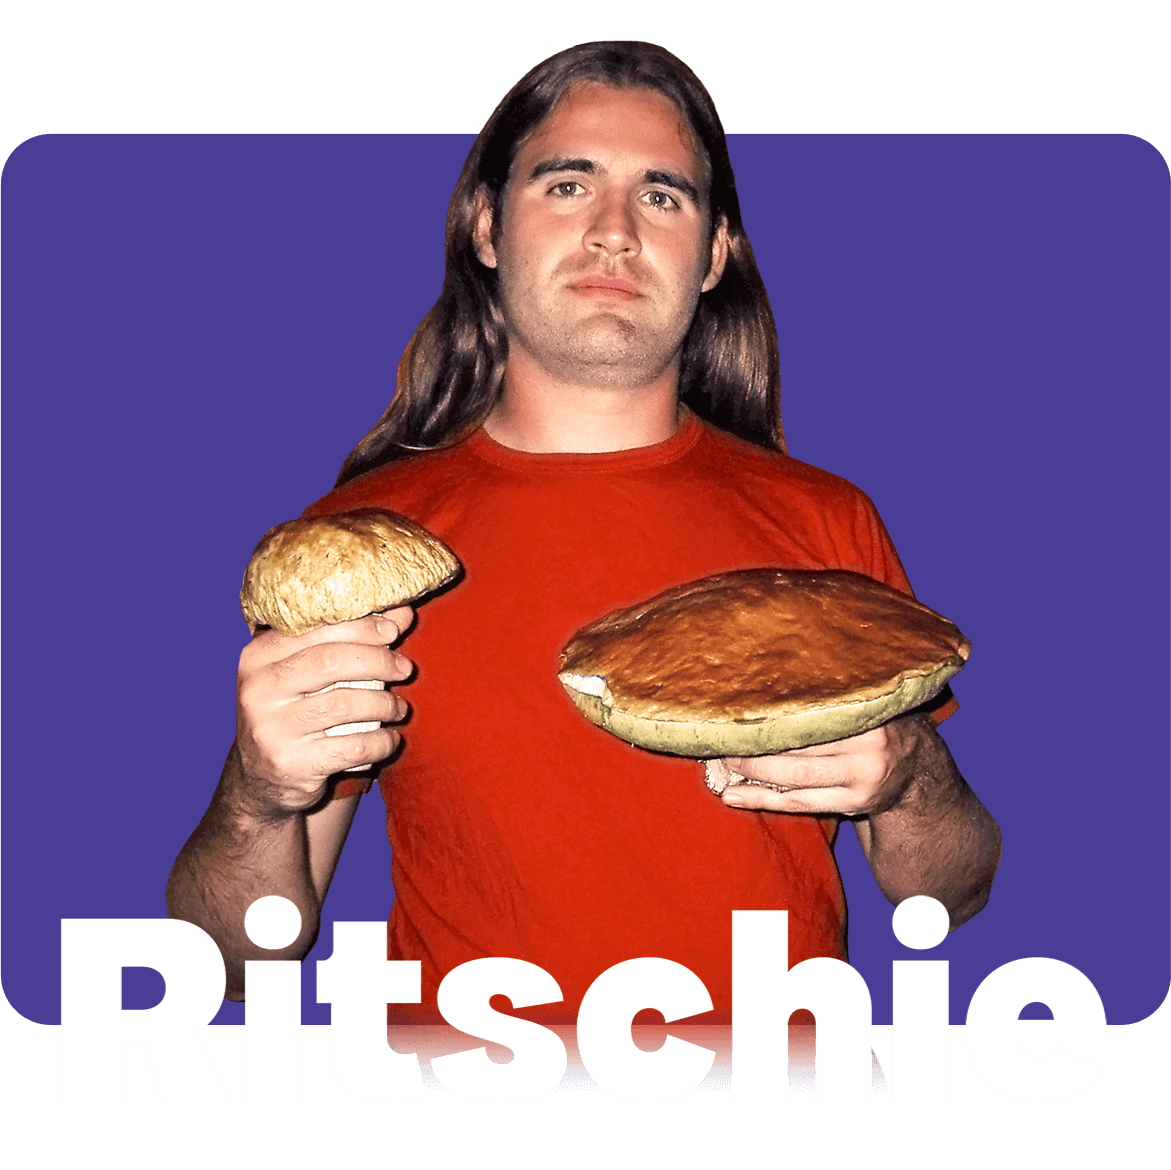 Portrait Ritschie: Ritschie mit langen Haaren und zwei risiegen Pilzen in der Hand